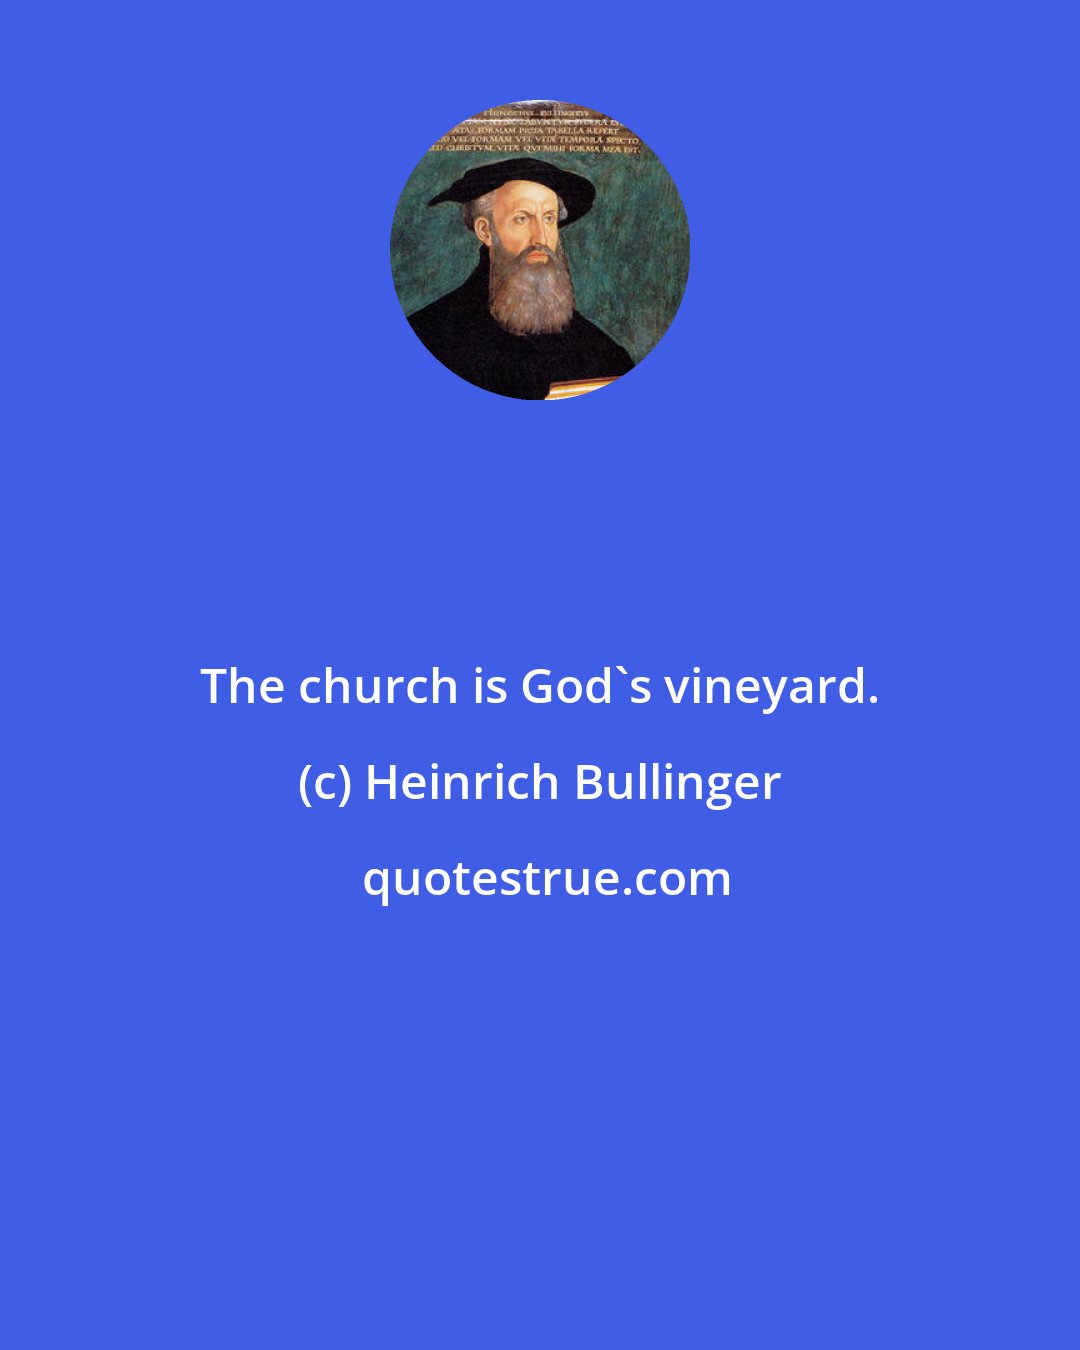 Heinrich Bullinger: The church is God's vineyard.